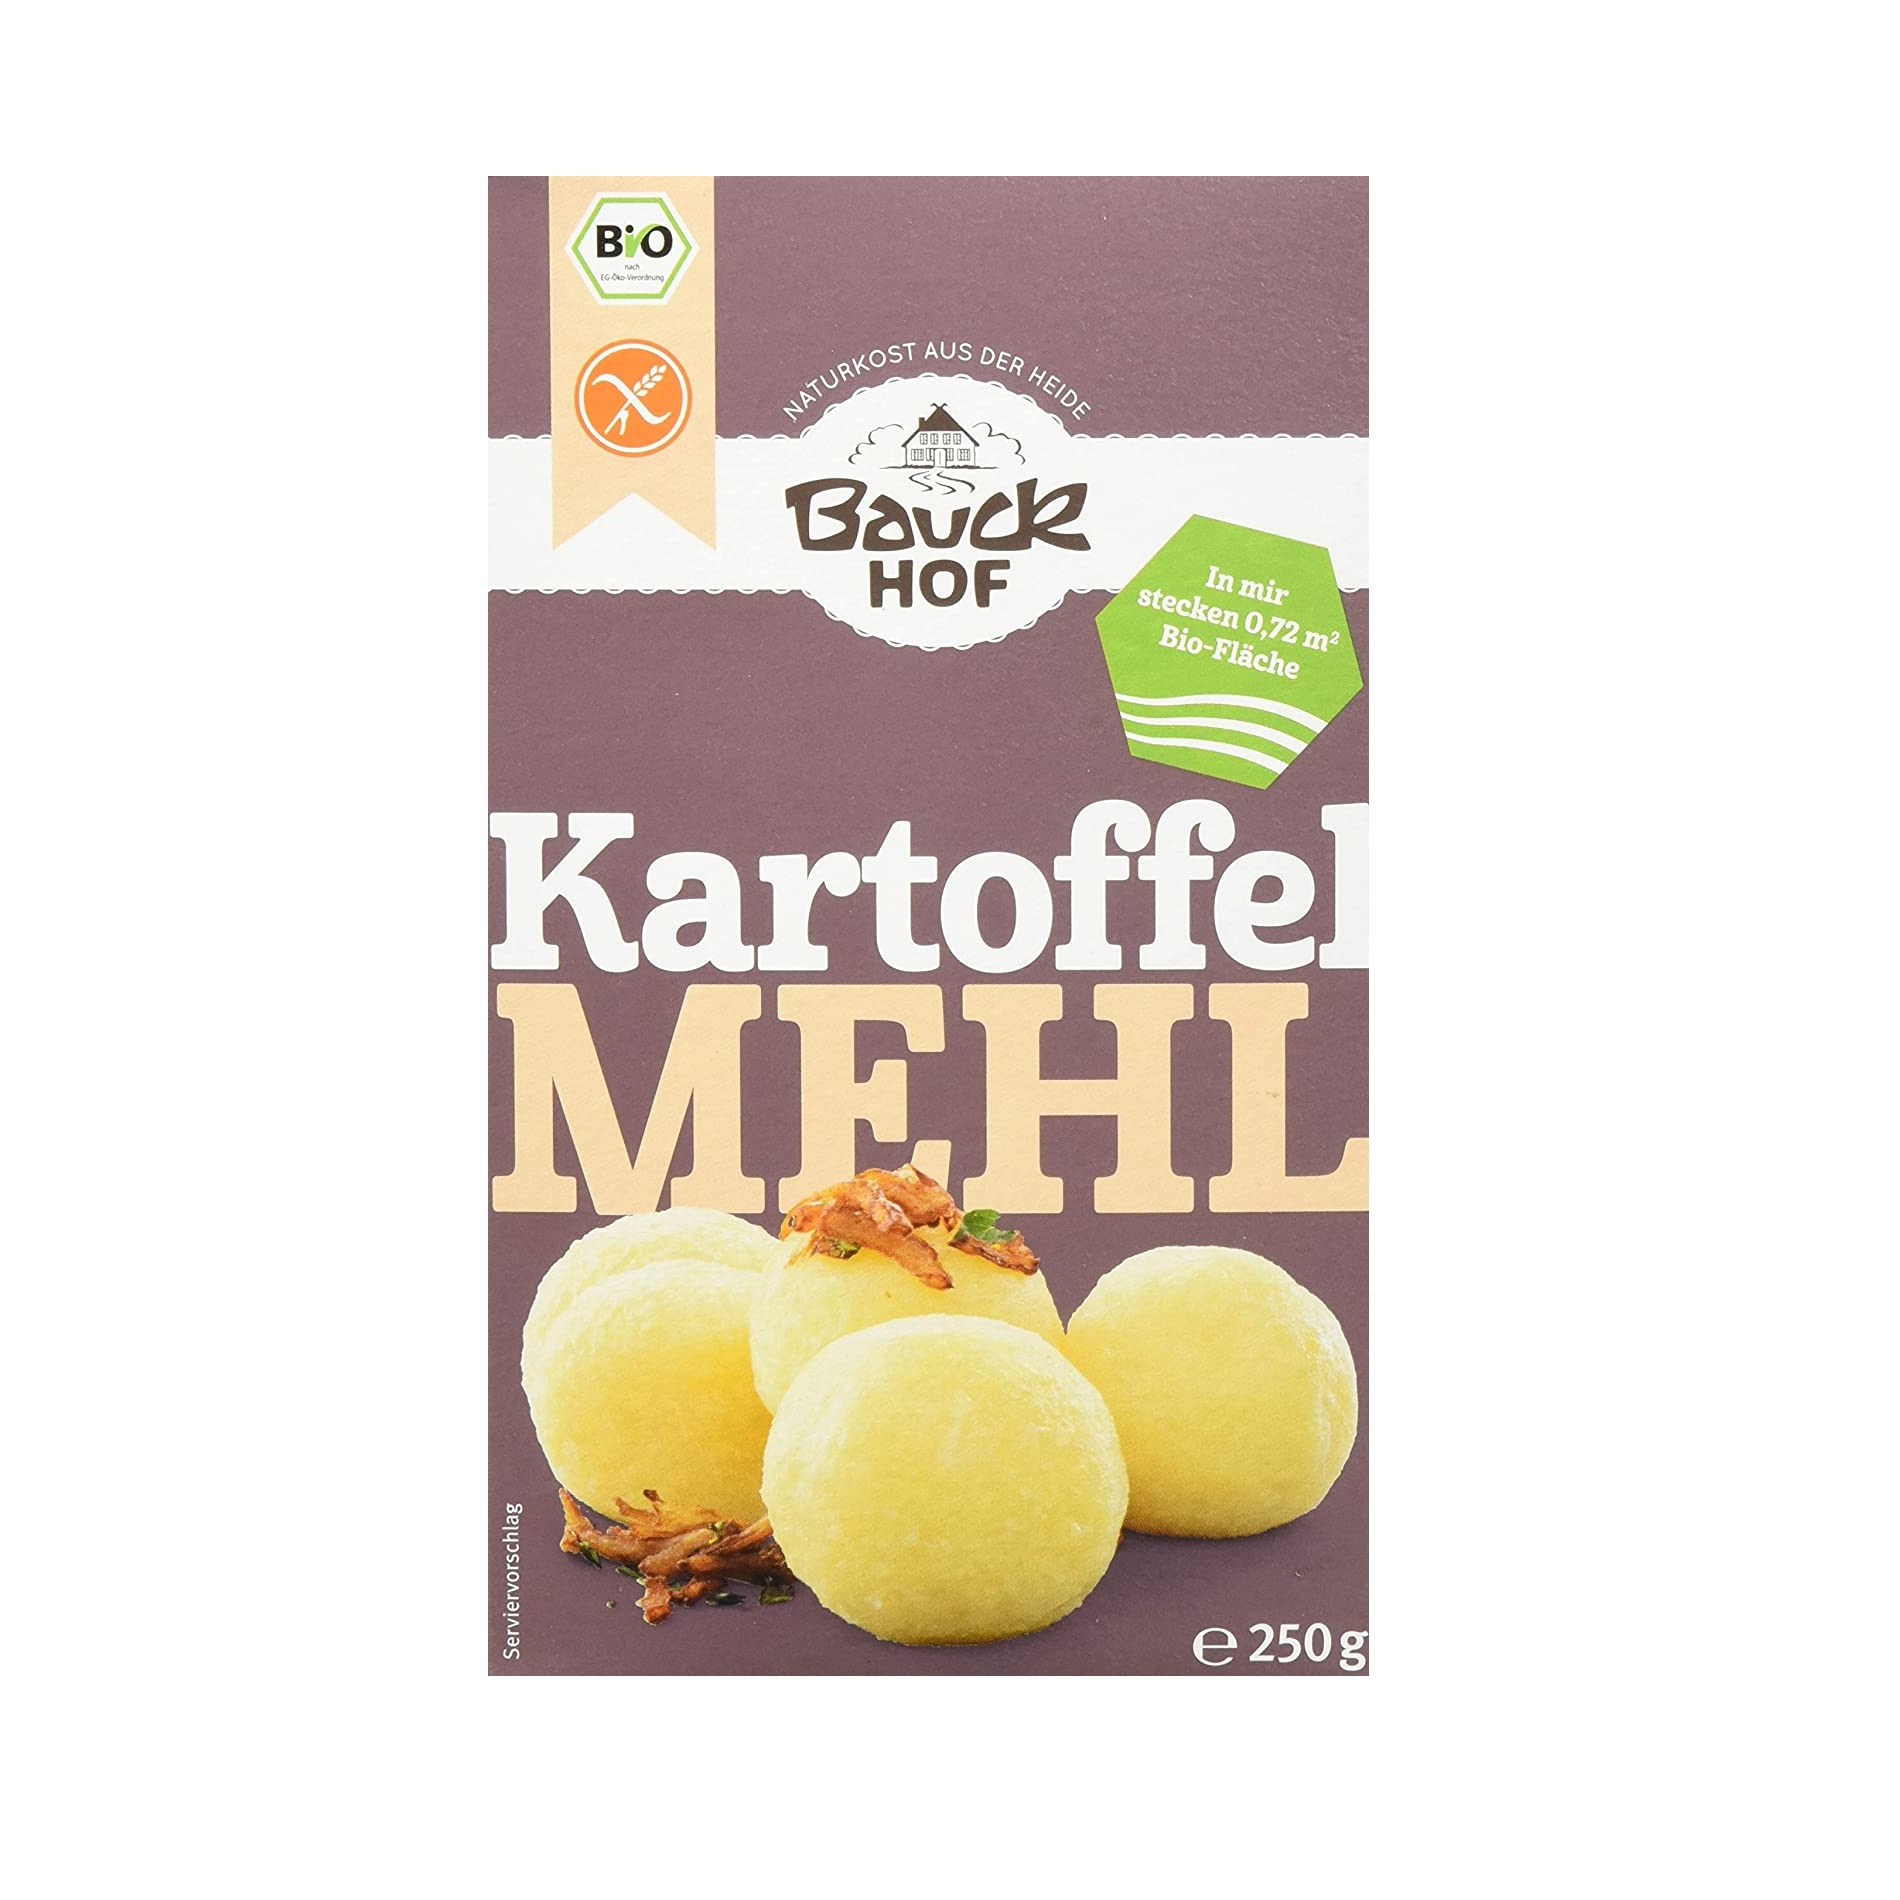 Tinh bột khoai tây hữu cơ 250g Bauck Hof